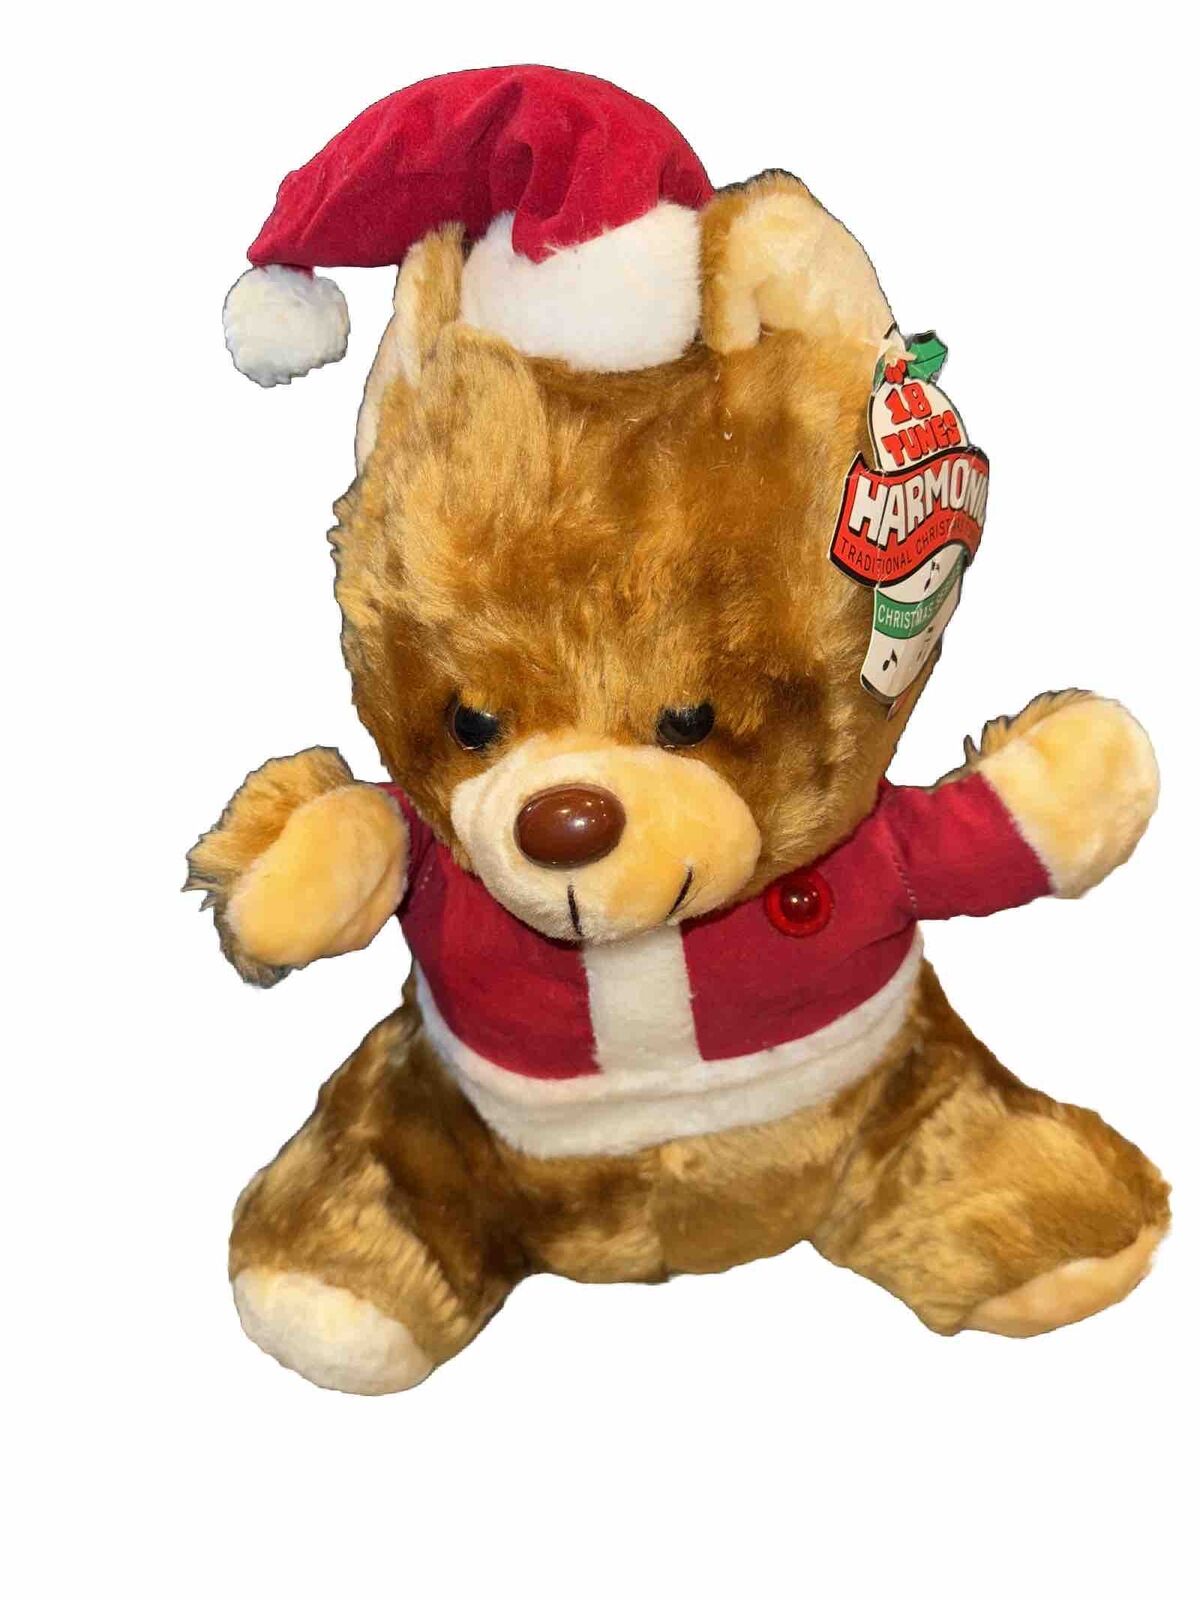 Vintage Musical Christmas Teddy Bear Light Up Heart Santa Bear Plush